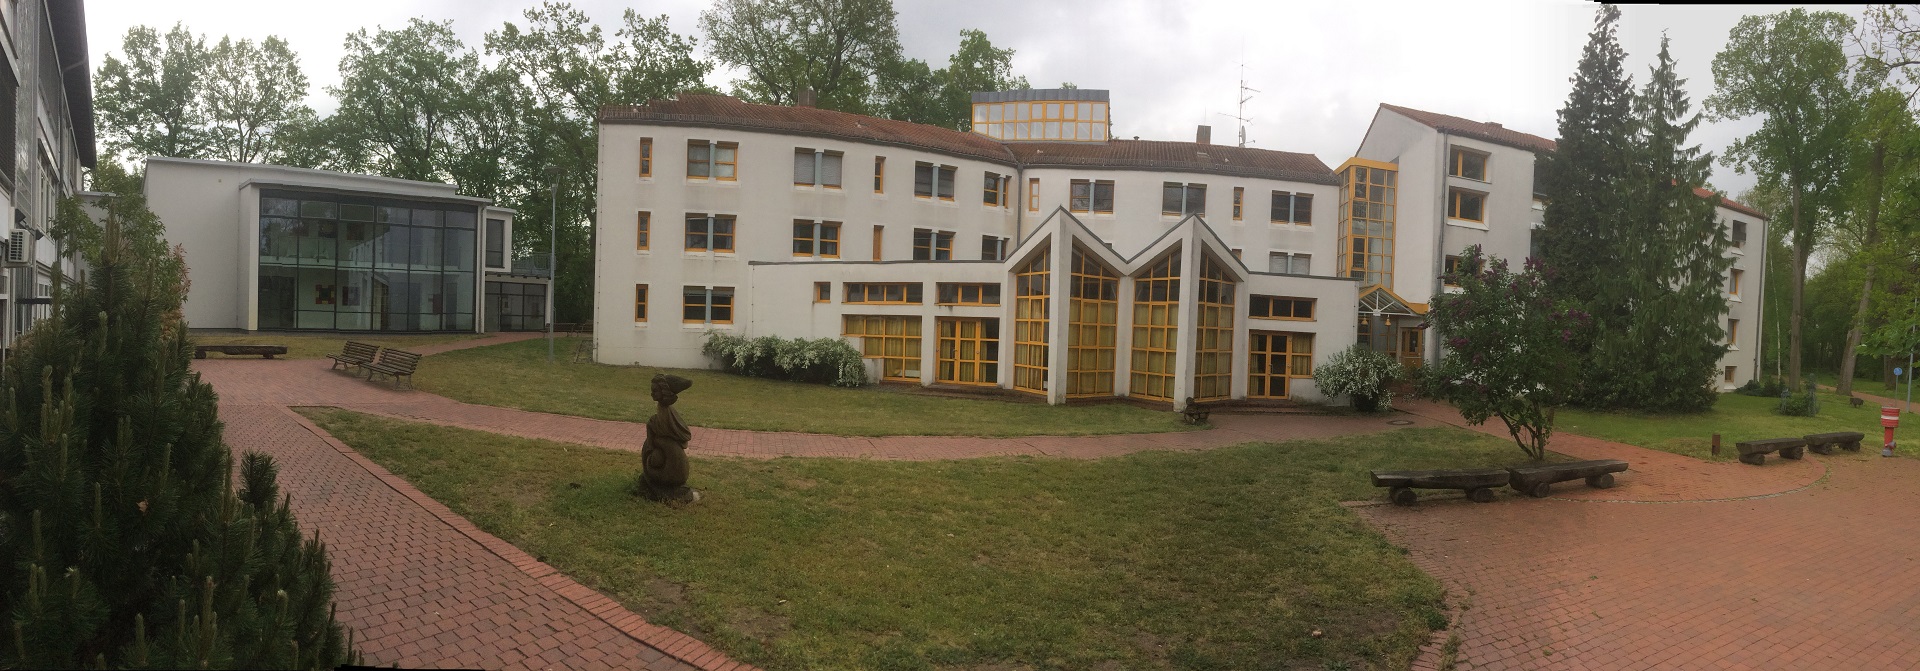 Litauisches Gymnasium